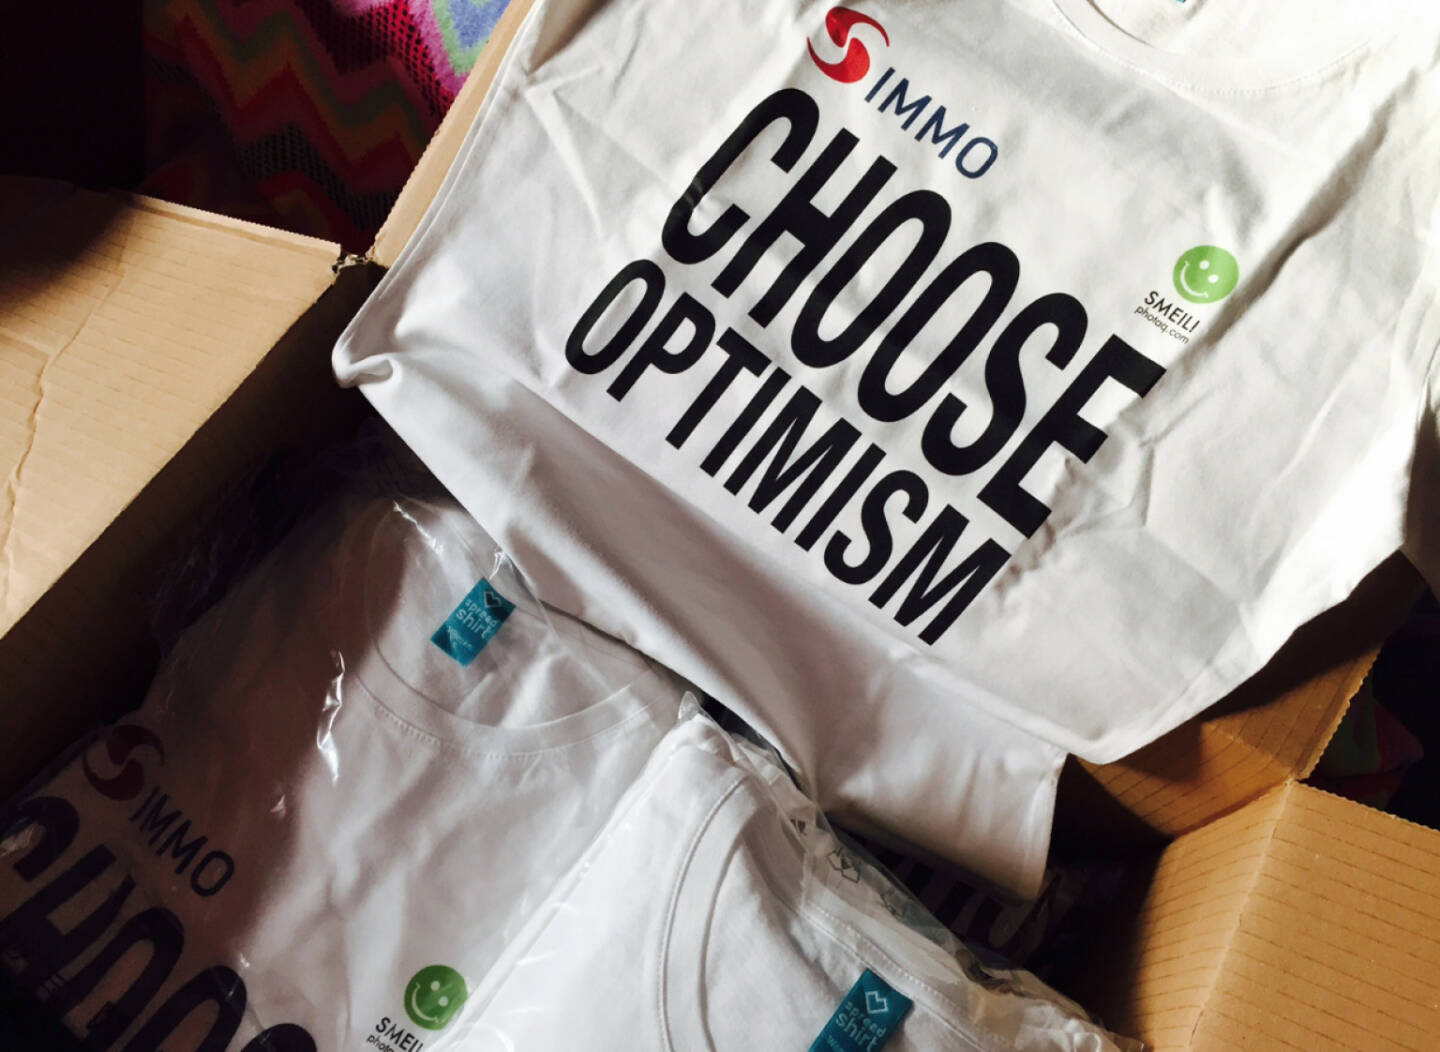 Die neuen Choose Optimism Shirts sind da, mit S Immo und Smeil / photaq.com